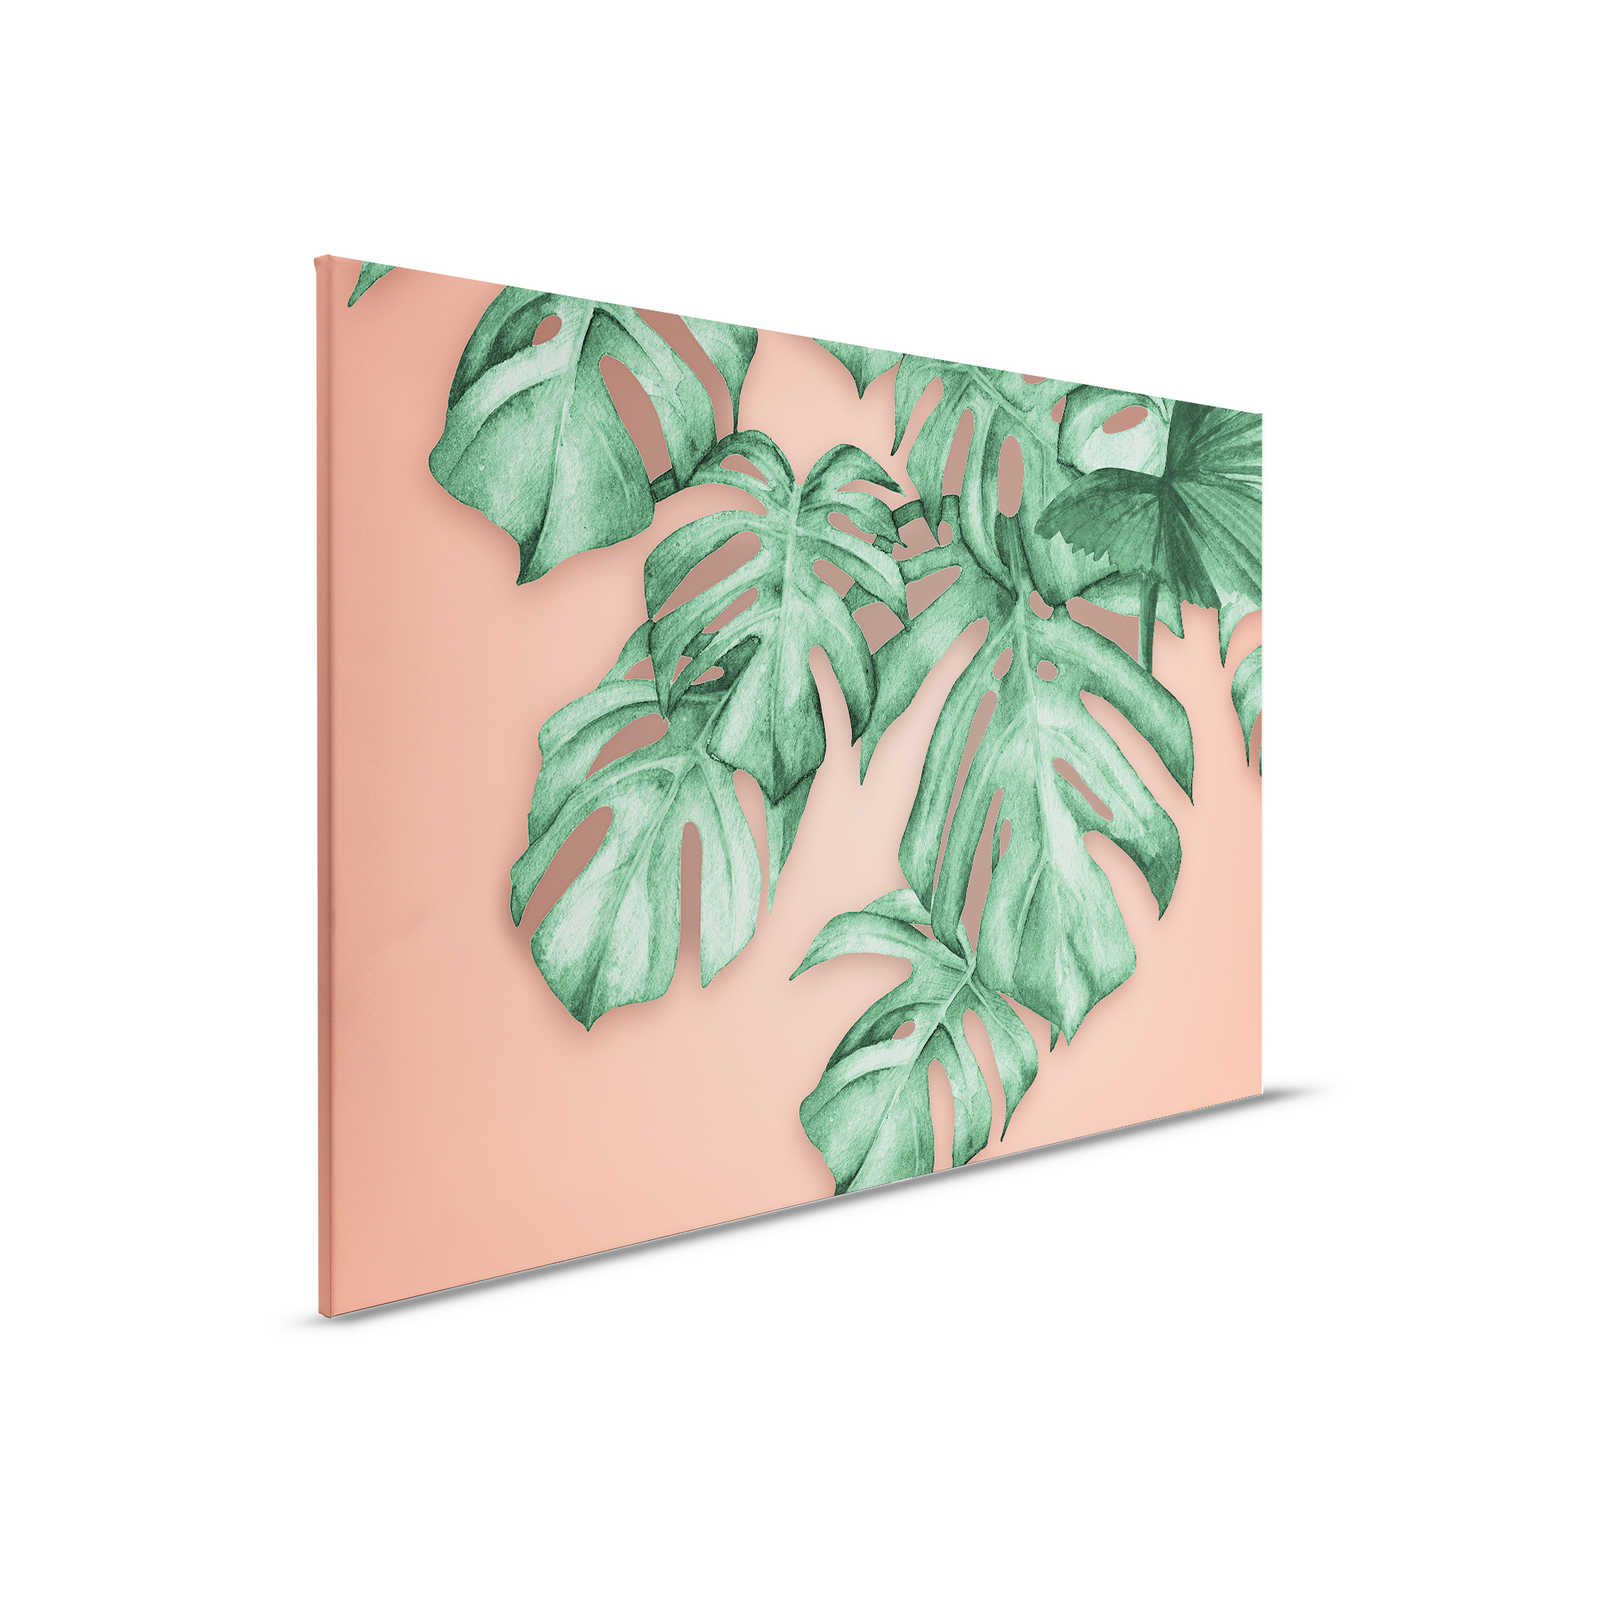 Leinwandbild mit tropischen Palmblätter – 0,90 m x 0,60 m
